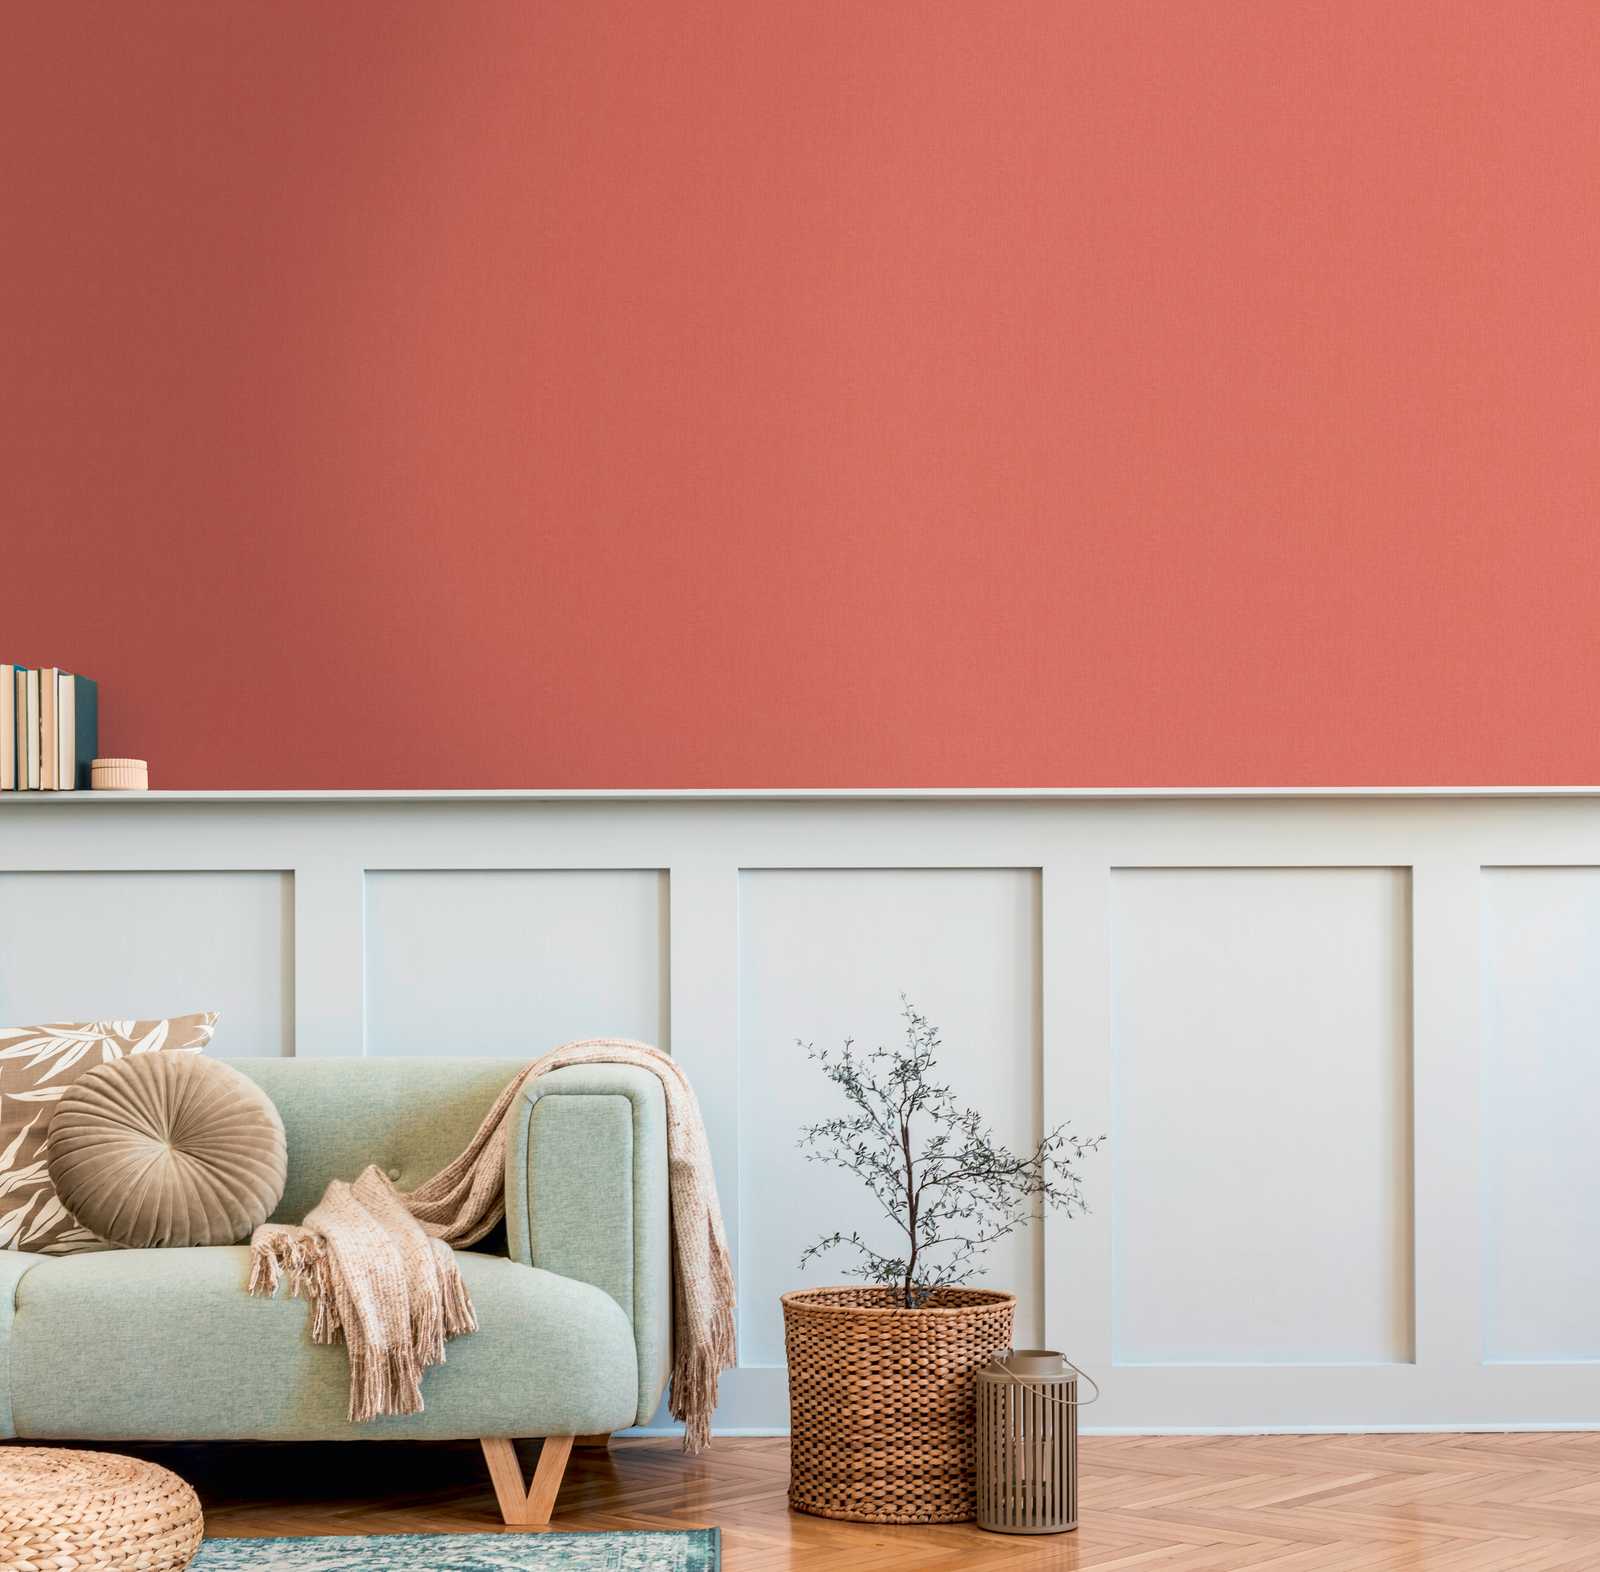             Papel pintado naranja con textura de lino y color terracota
        